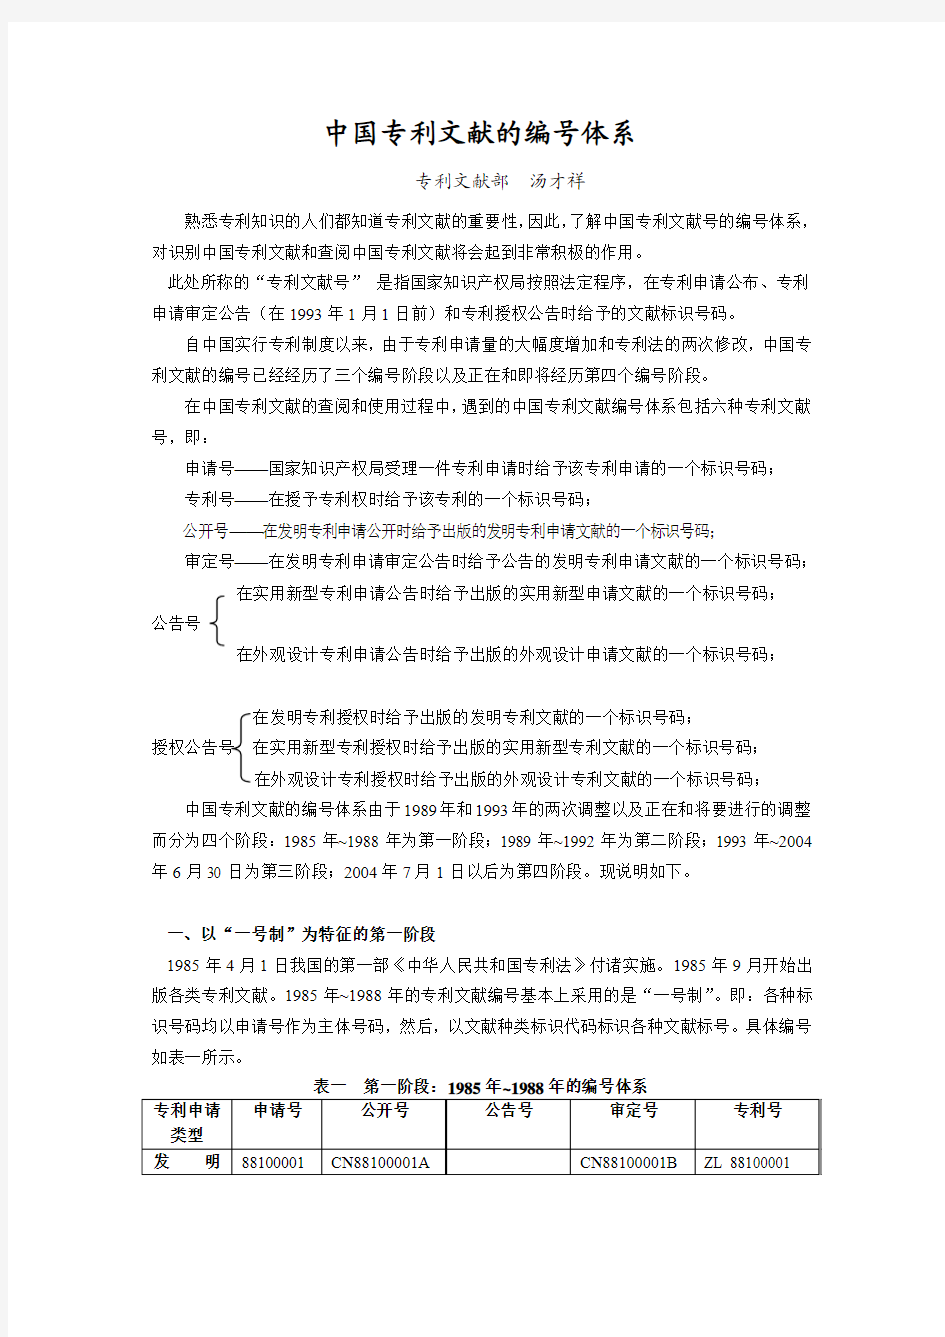 中国专利文献的编号系统